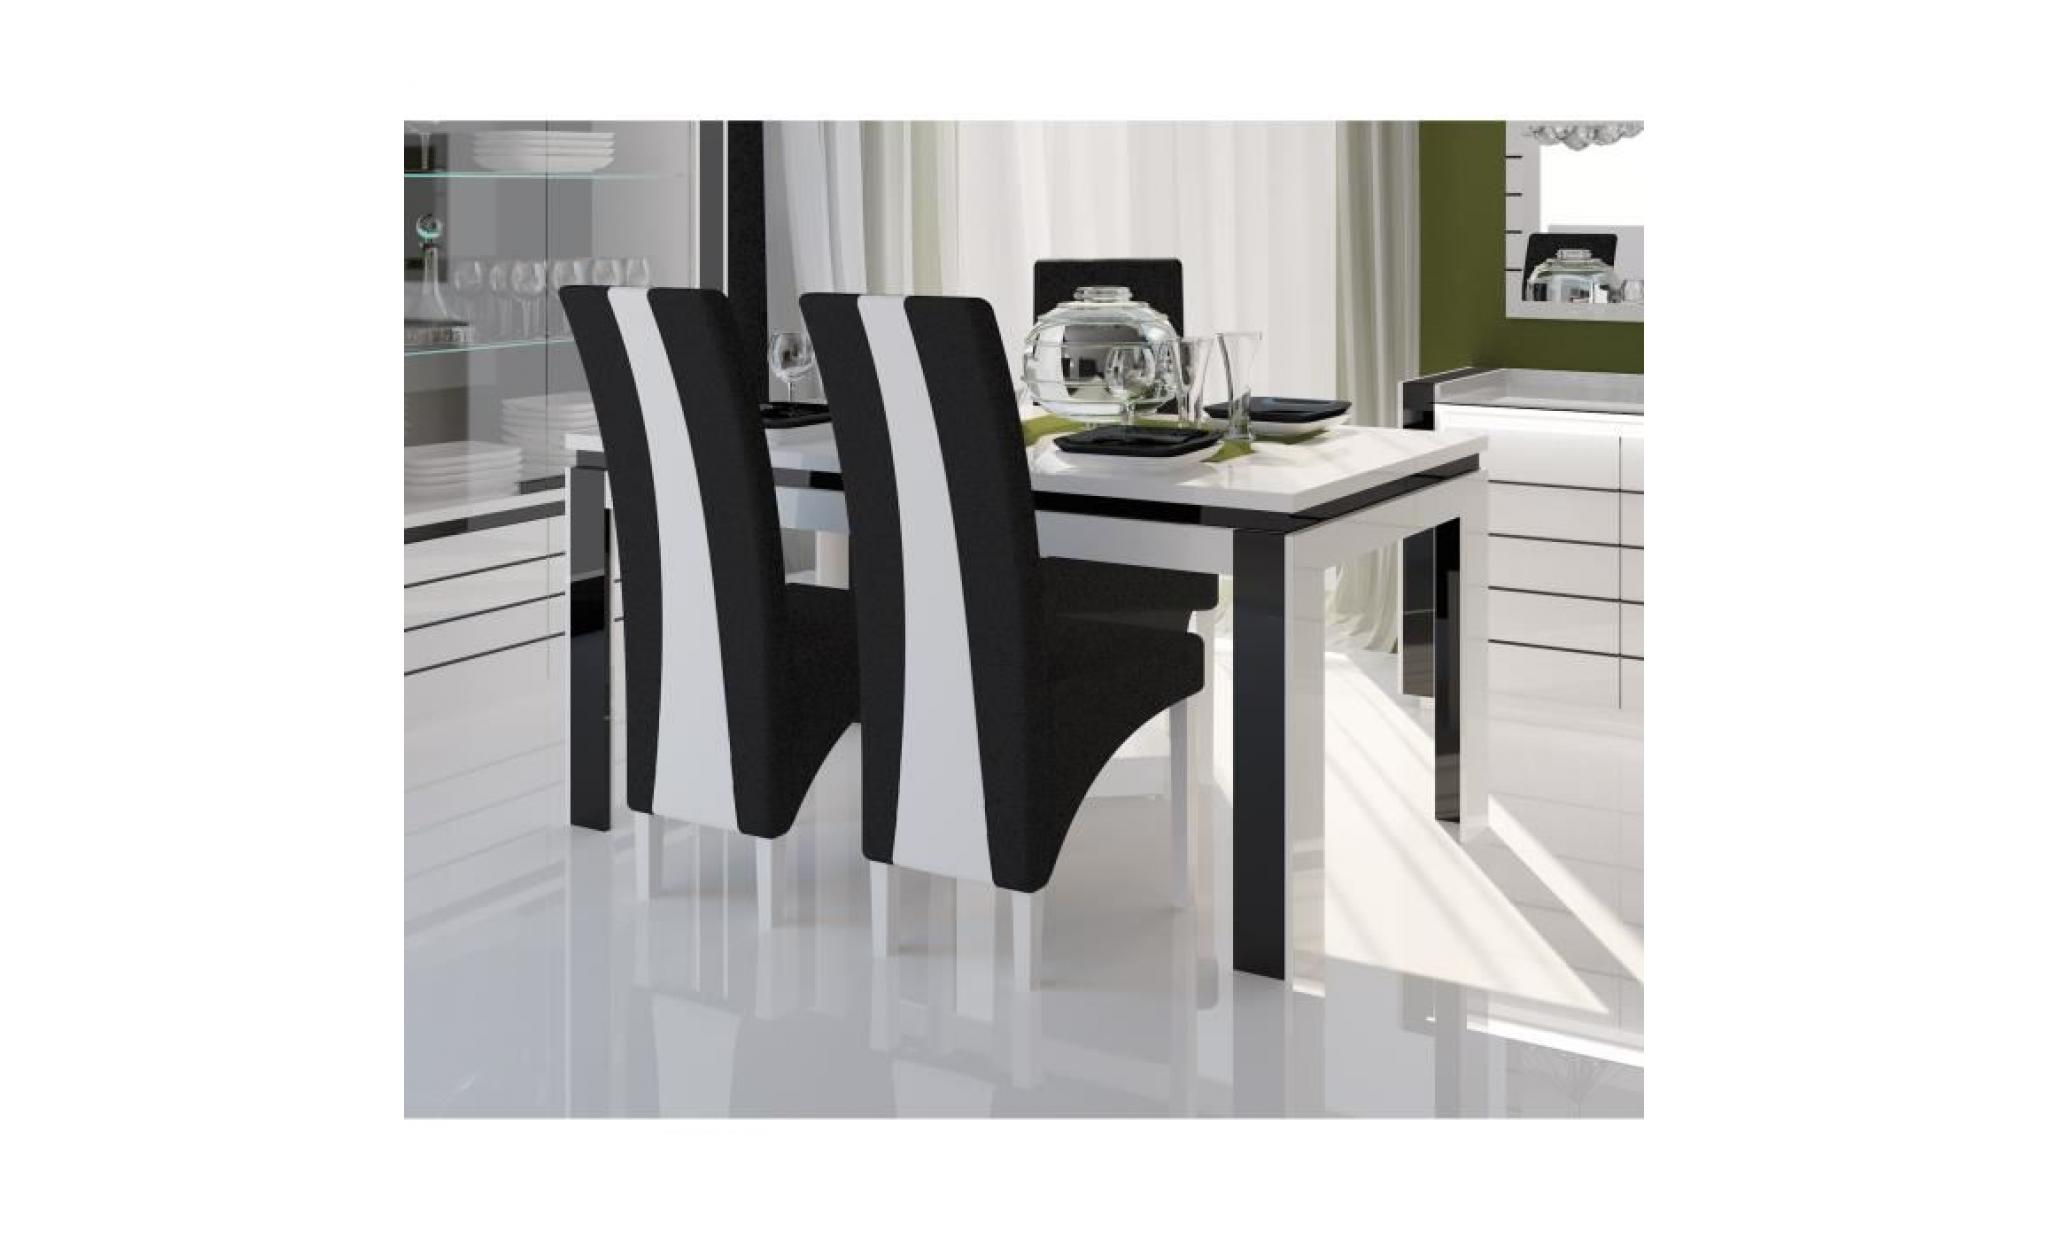 price factory   salle à manger complète lina blanche et noire. table 160 cm + buffet + 3 x miroirs + vaisselier (led) + 4 chaises pas cher